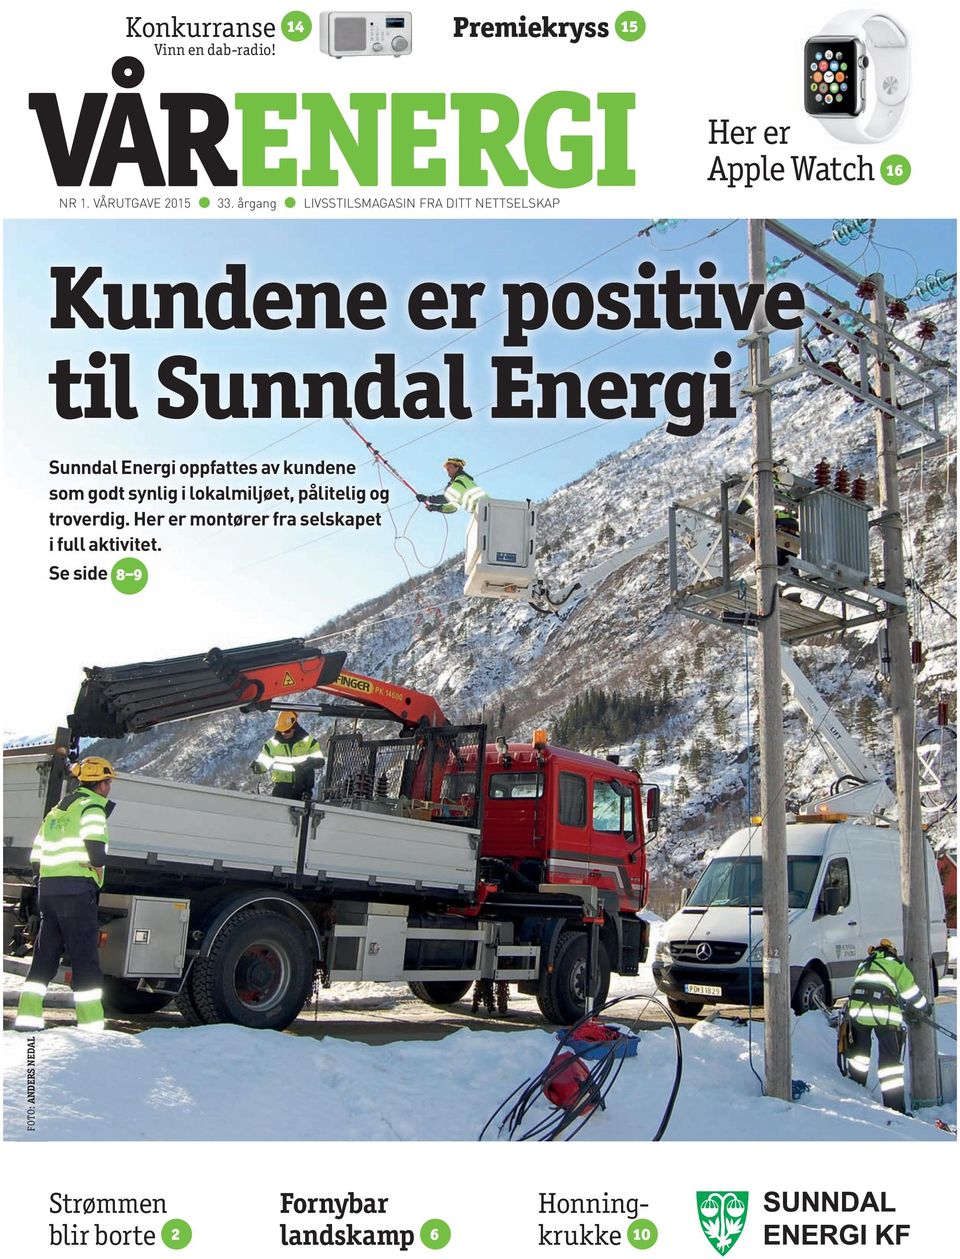 Energi Sunndal Energi oppfattes av kundene som godt synlig i lokalmiljøet, pålitelig og troverdig.